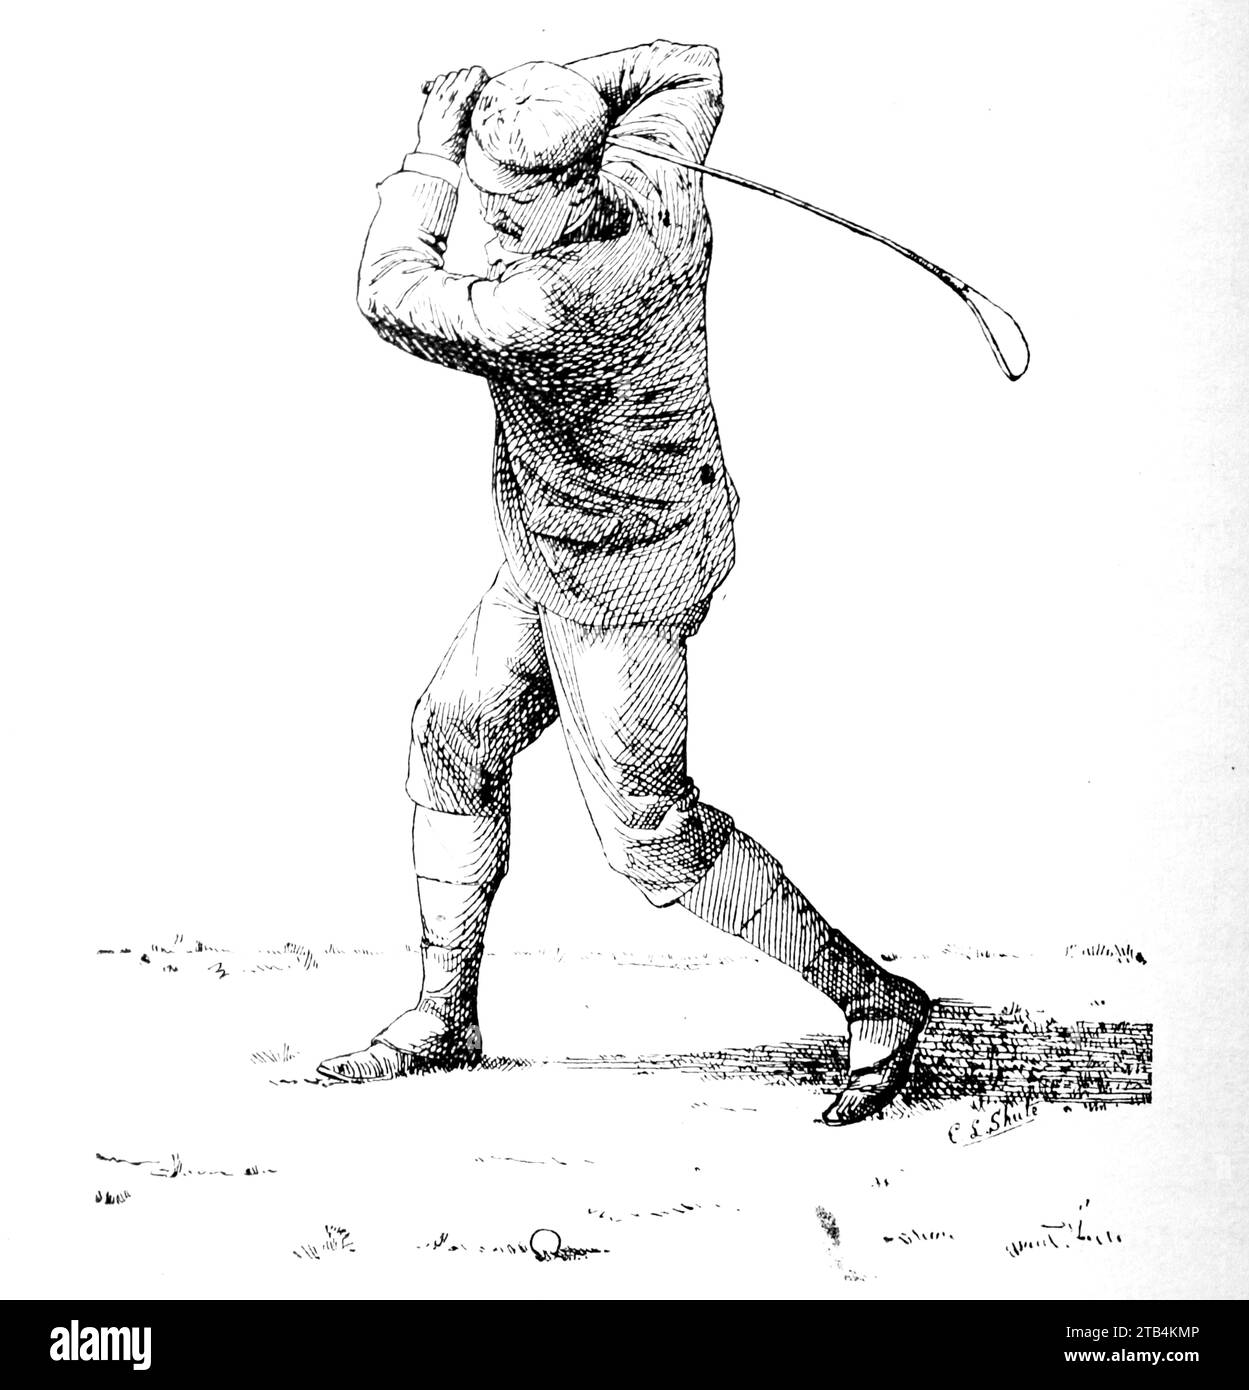 Nella parte superiore dell'oscillazione (come dovrebbe essere), da E.L. Shute. Da un'illustrazione sul golf, datata dal 1889 al 1901. La storia del golf è lunga. Anche se le sue origini sono contestate, gli storici sono generalmente concordi sul fatto che quello che è conosciuto come "moderno" golf è iniziato nel Medioevo in Scozia. Fu solo dalla metà alla fine del XIX secolo che questo sport divenne più popolare in Gran Bretagna, nell'Impero britannico e poi negli Stati Uniti. Nel corso degli anni, l'umile palla da golf e il golf club sono cambiati enormemente. Foto Stock